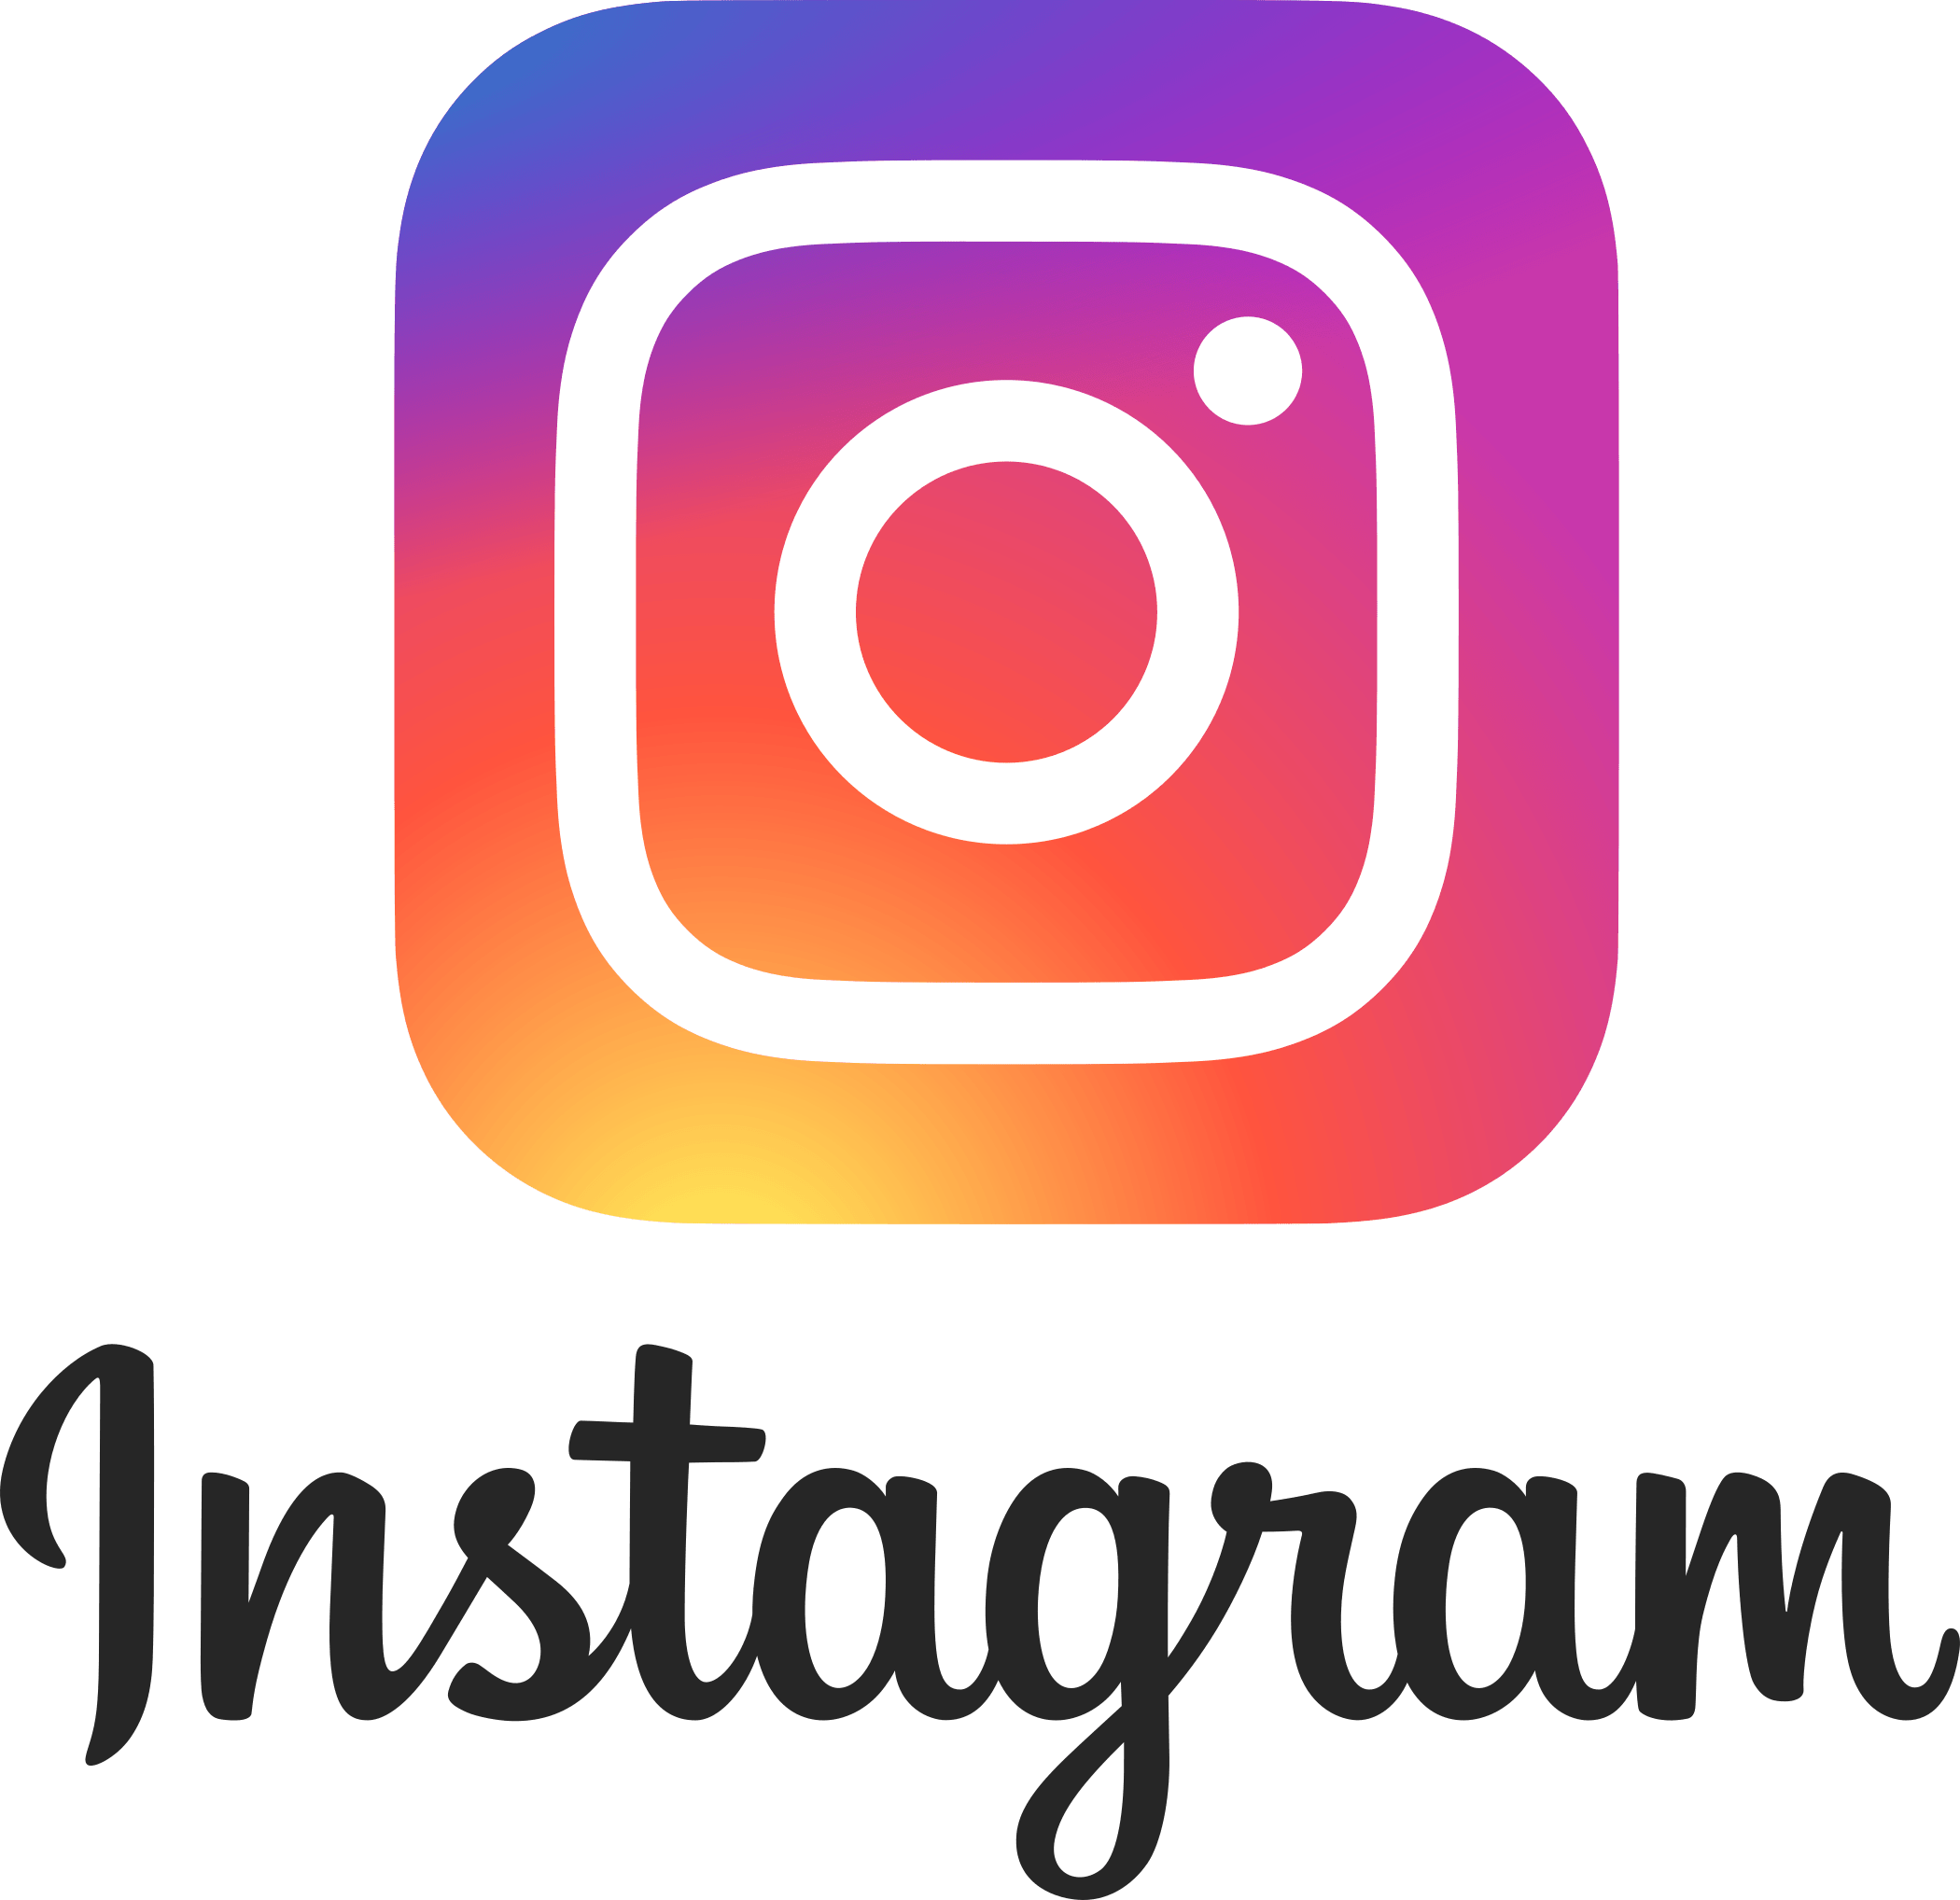 Intstagram Logo - Instagram Logo and Vector